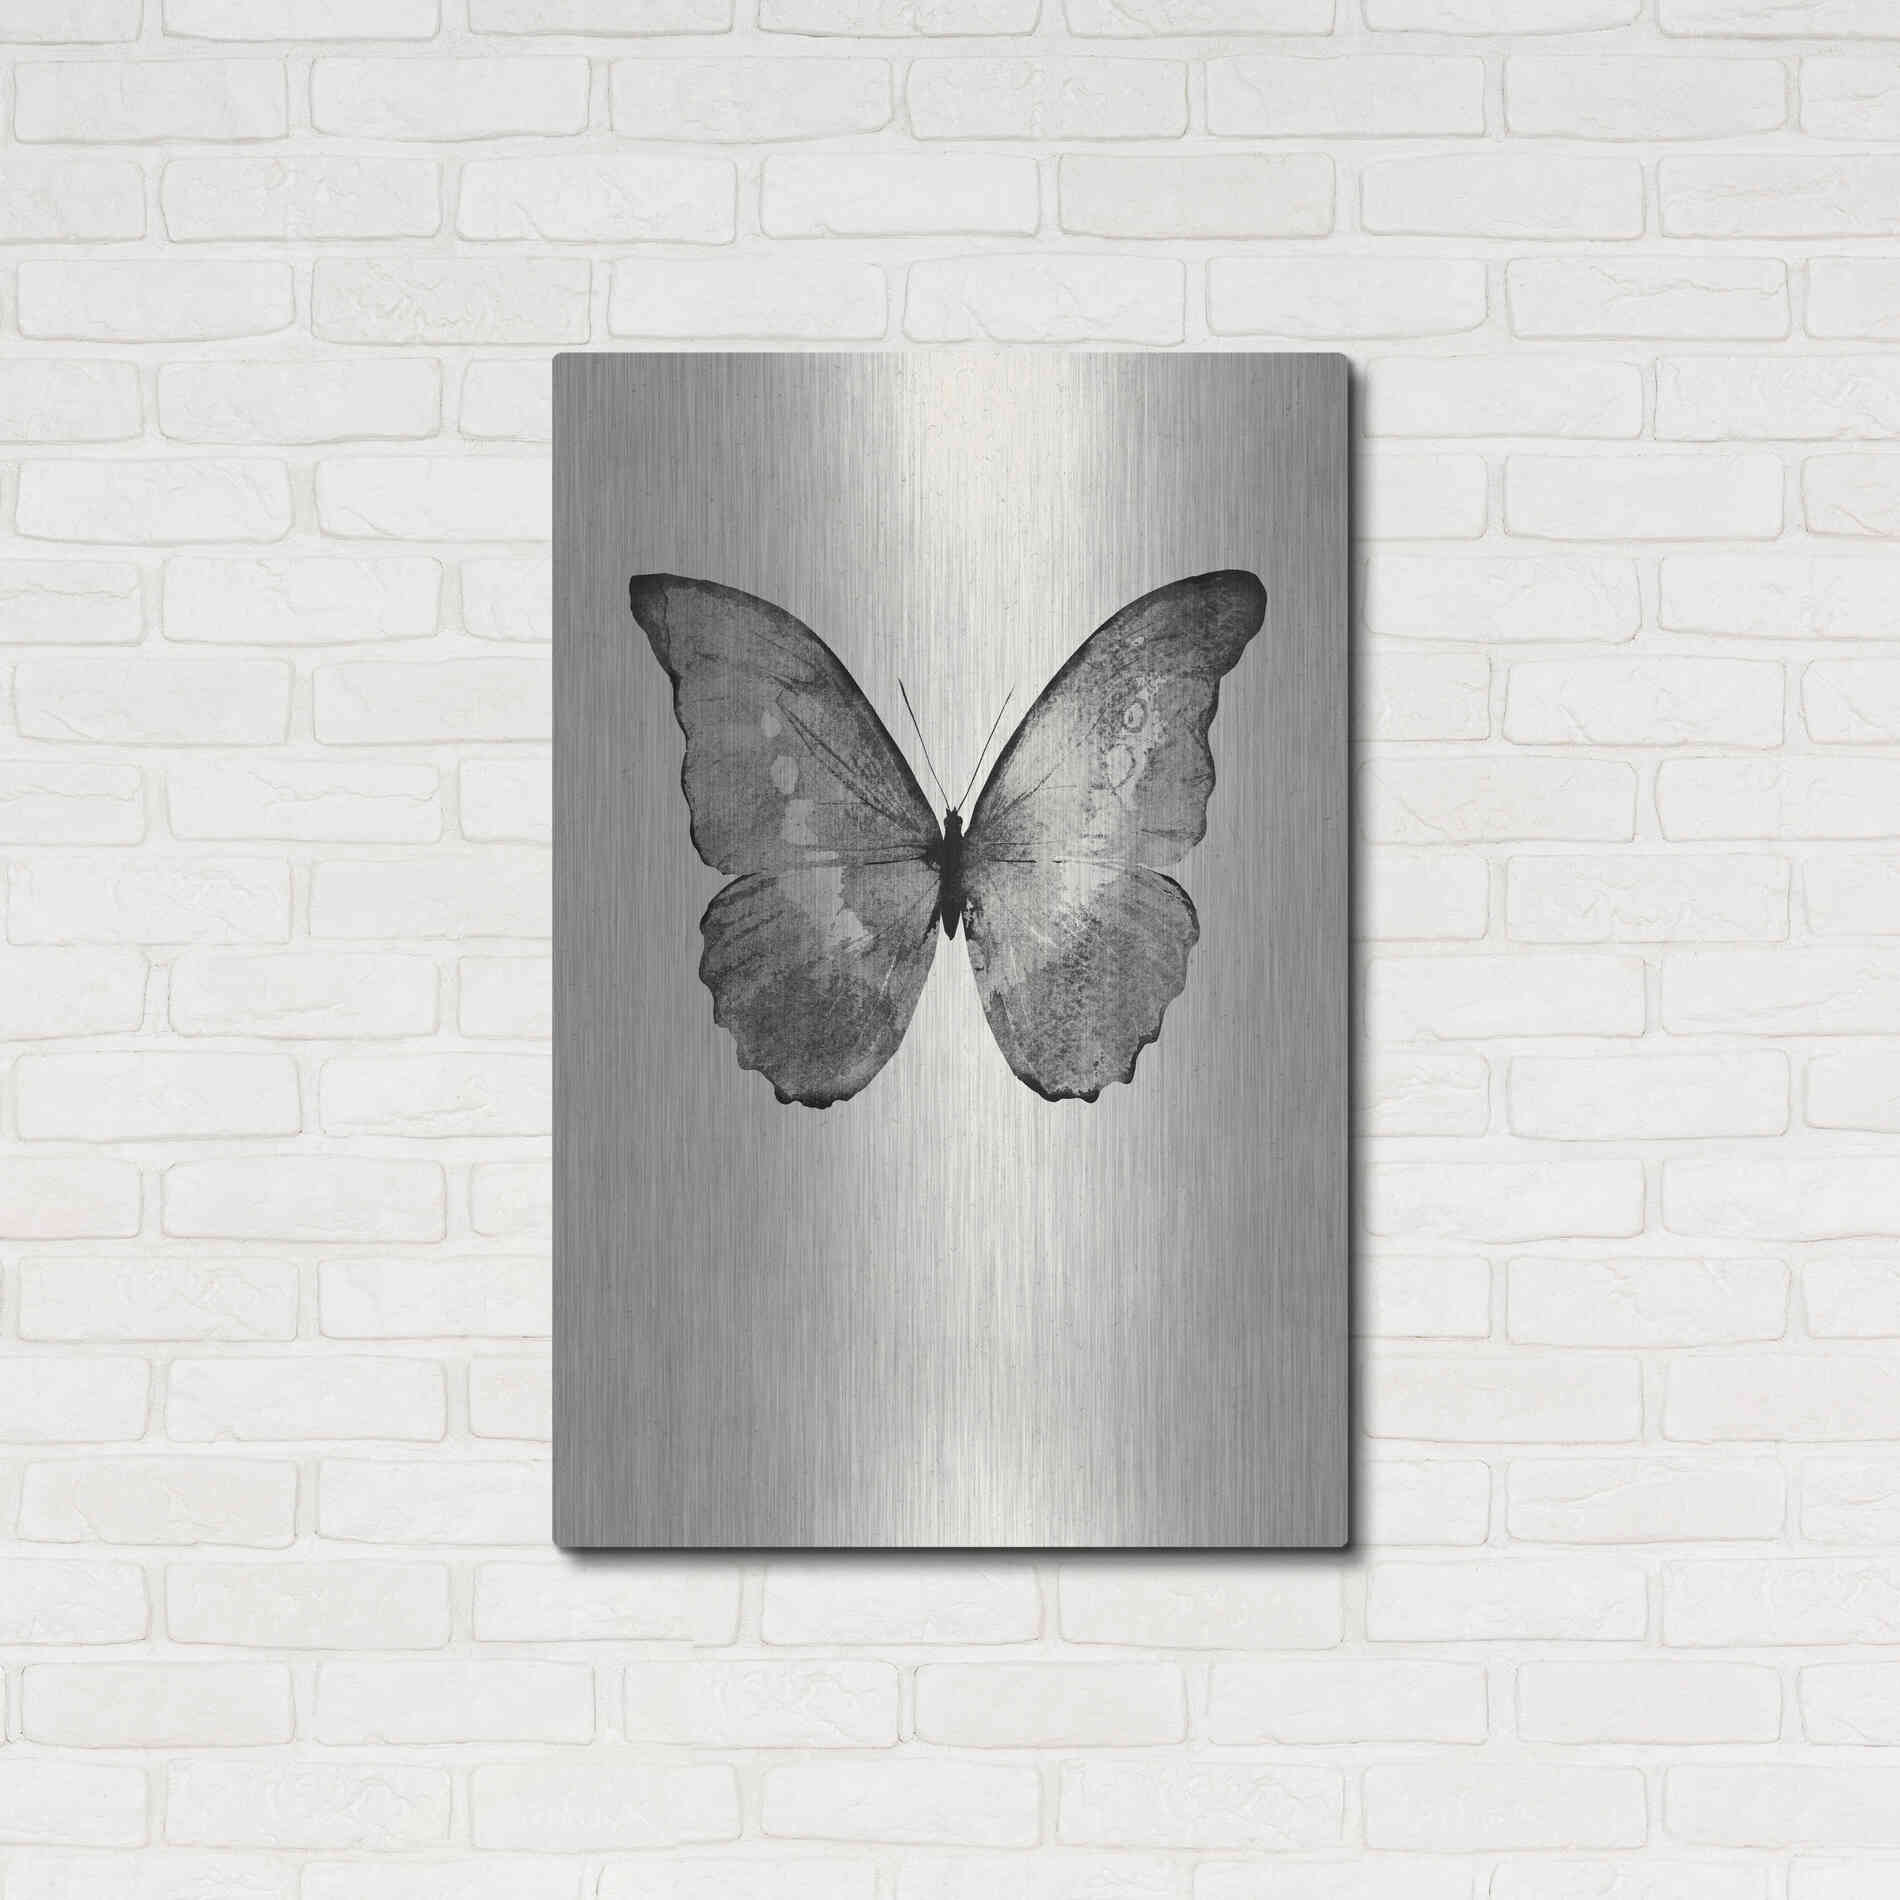 Luxe Metal Art 'Black Butterfly on Tan' by Design Fabrikken, Metal Wall Art,24x36